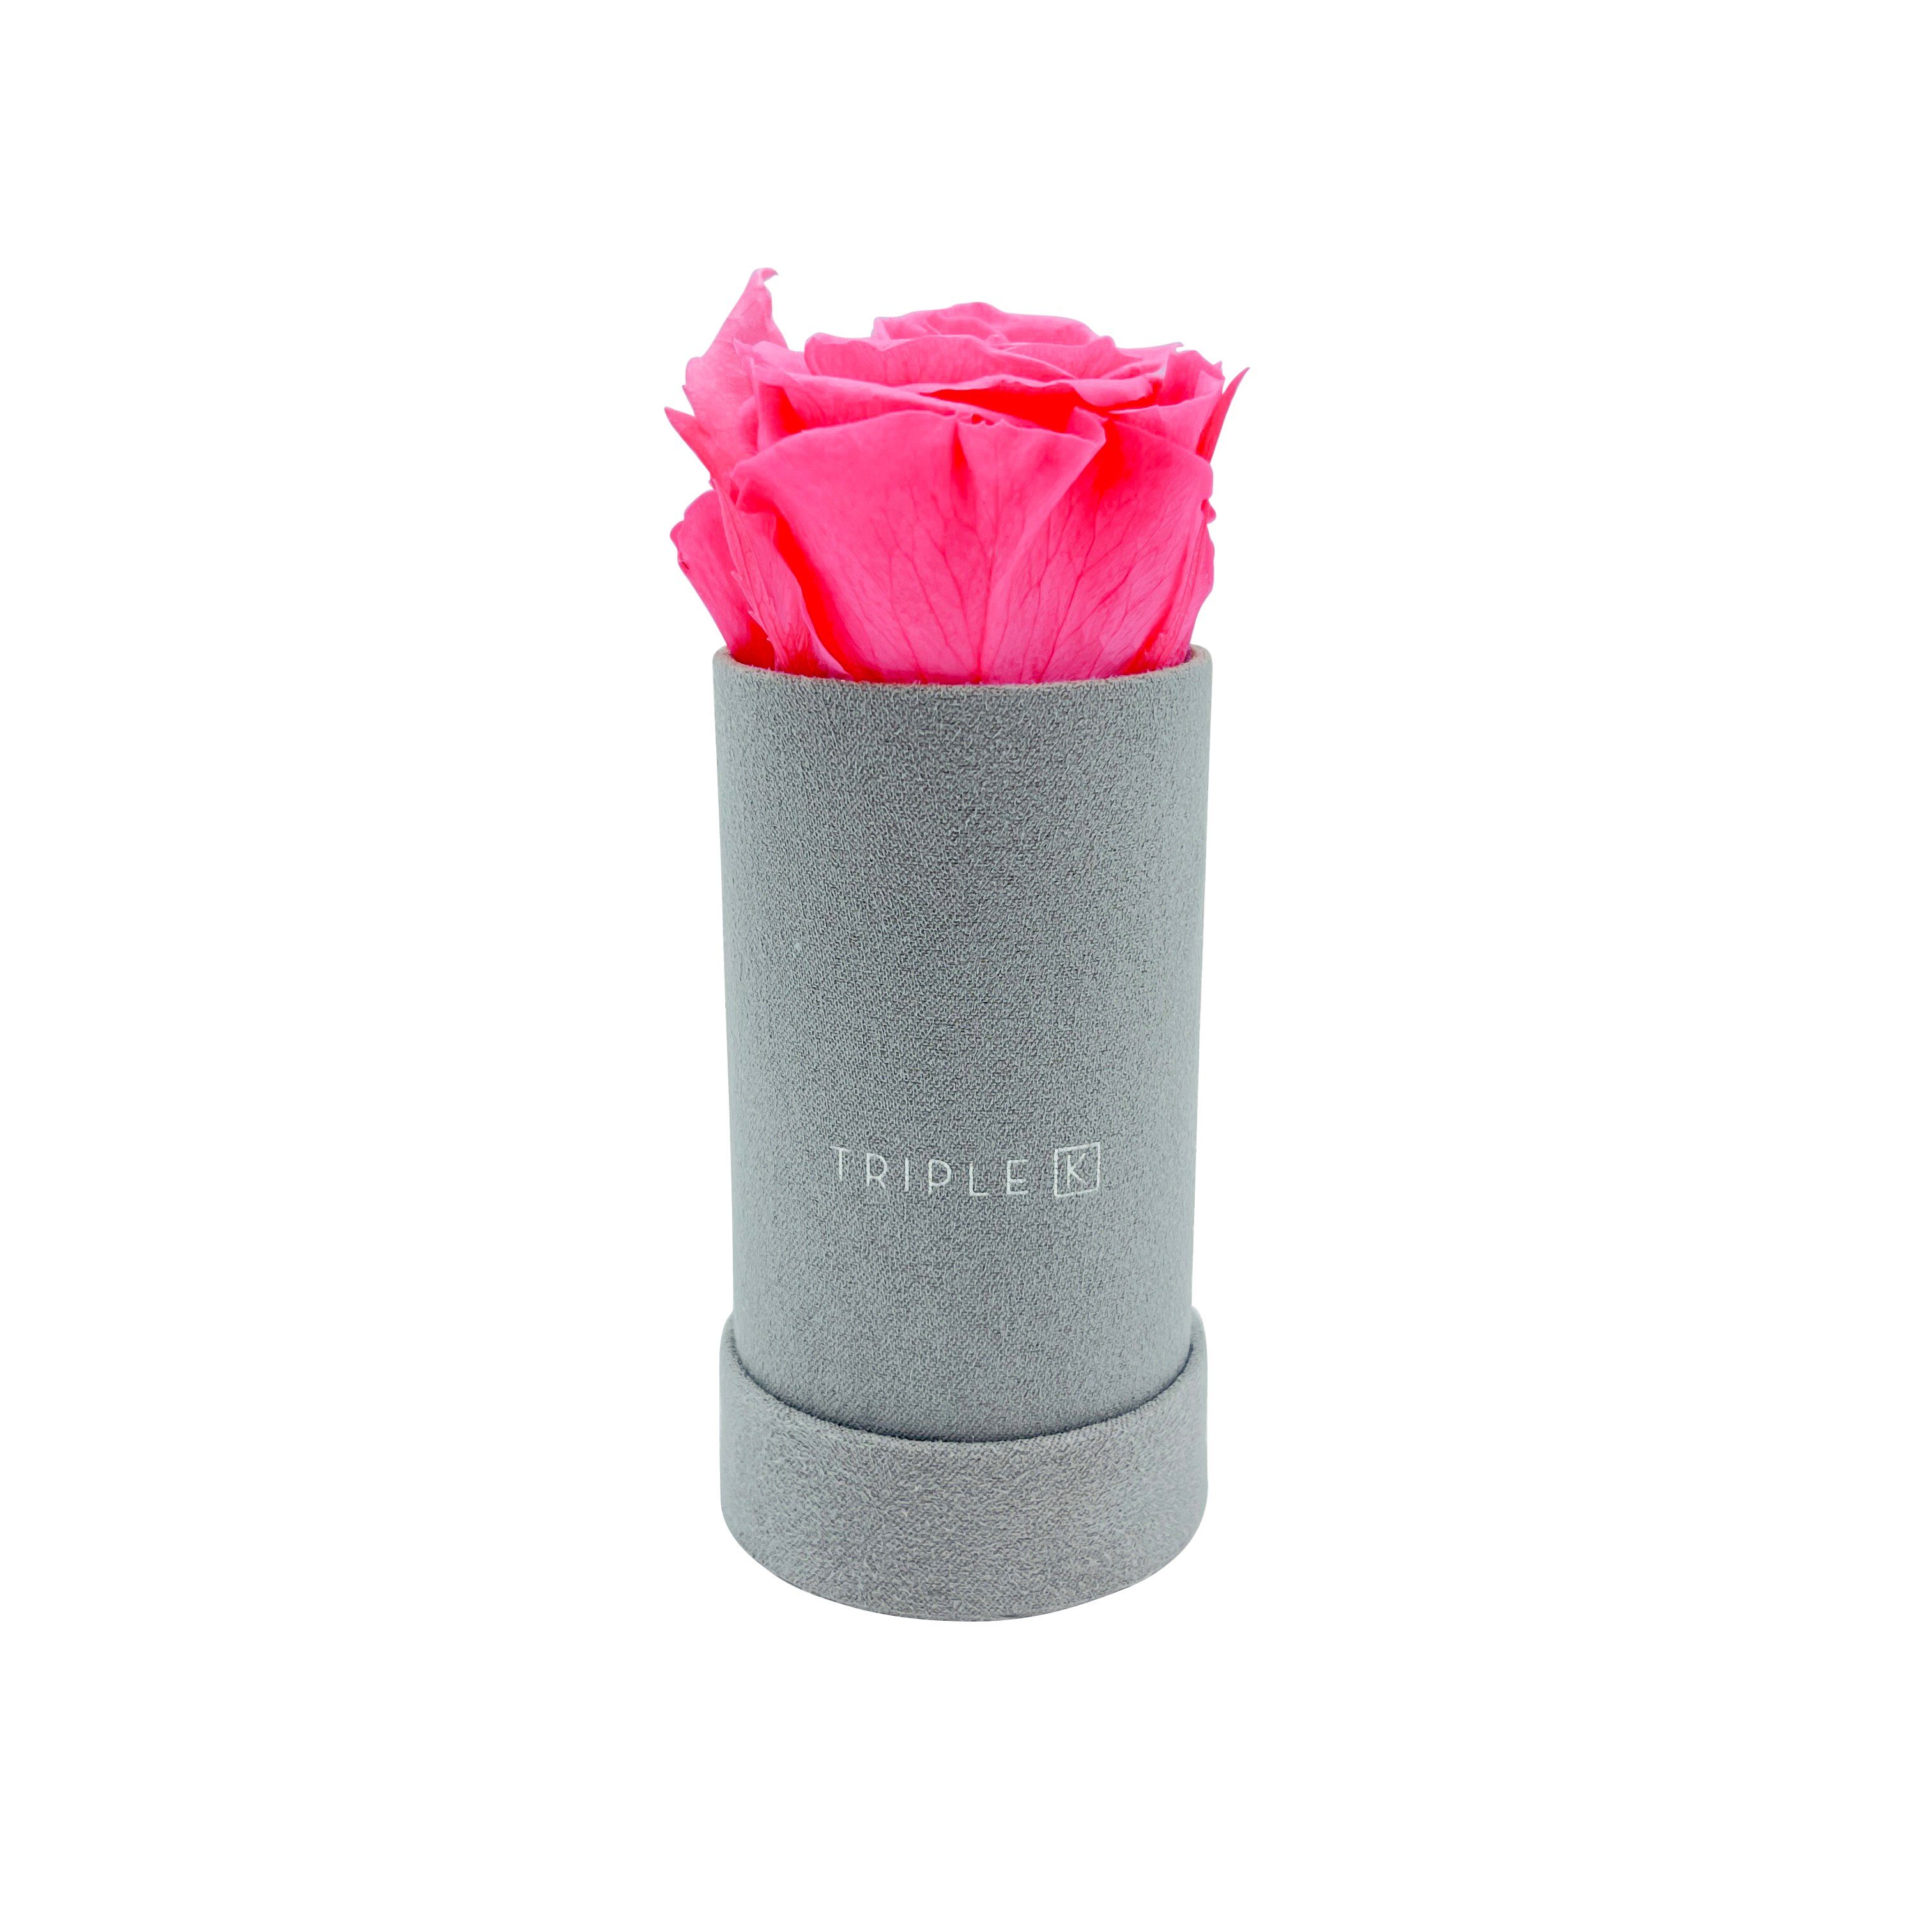 Kunstblume TRIPLE K - Rosenbox Velvet mit Infinity Rosen, bis 3 Jahre Haltbar, Flowerbox mit konservierten Rosen, Blumenbox Inkl. Grußkarte Infinity Rose, TRIPLE K Pink